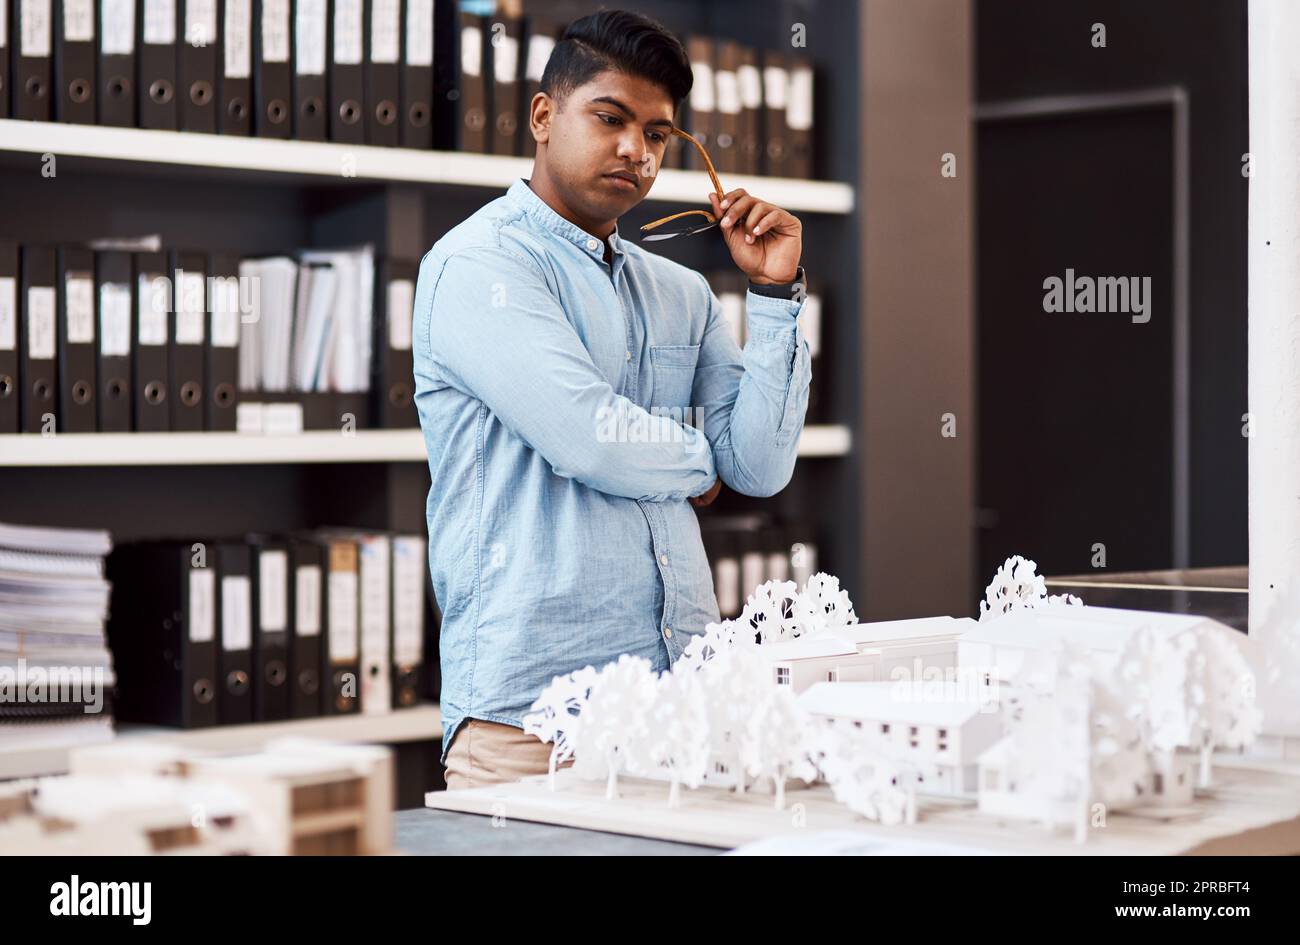 Die Grundlage für ein erfolgreiches Projekt. Ein junger Architekt, der in einem modernen Büro ein Baumodell entwirft. Stockfoto